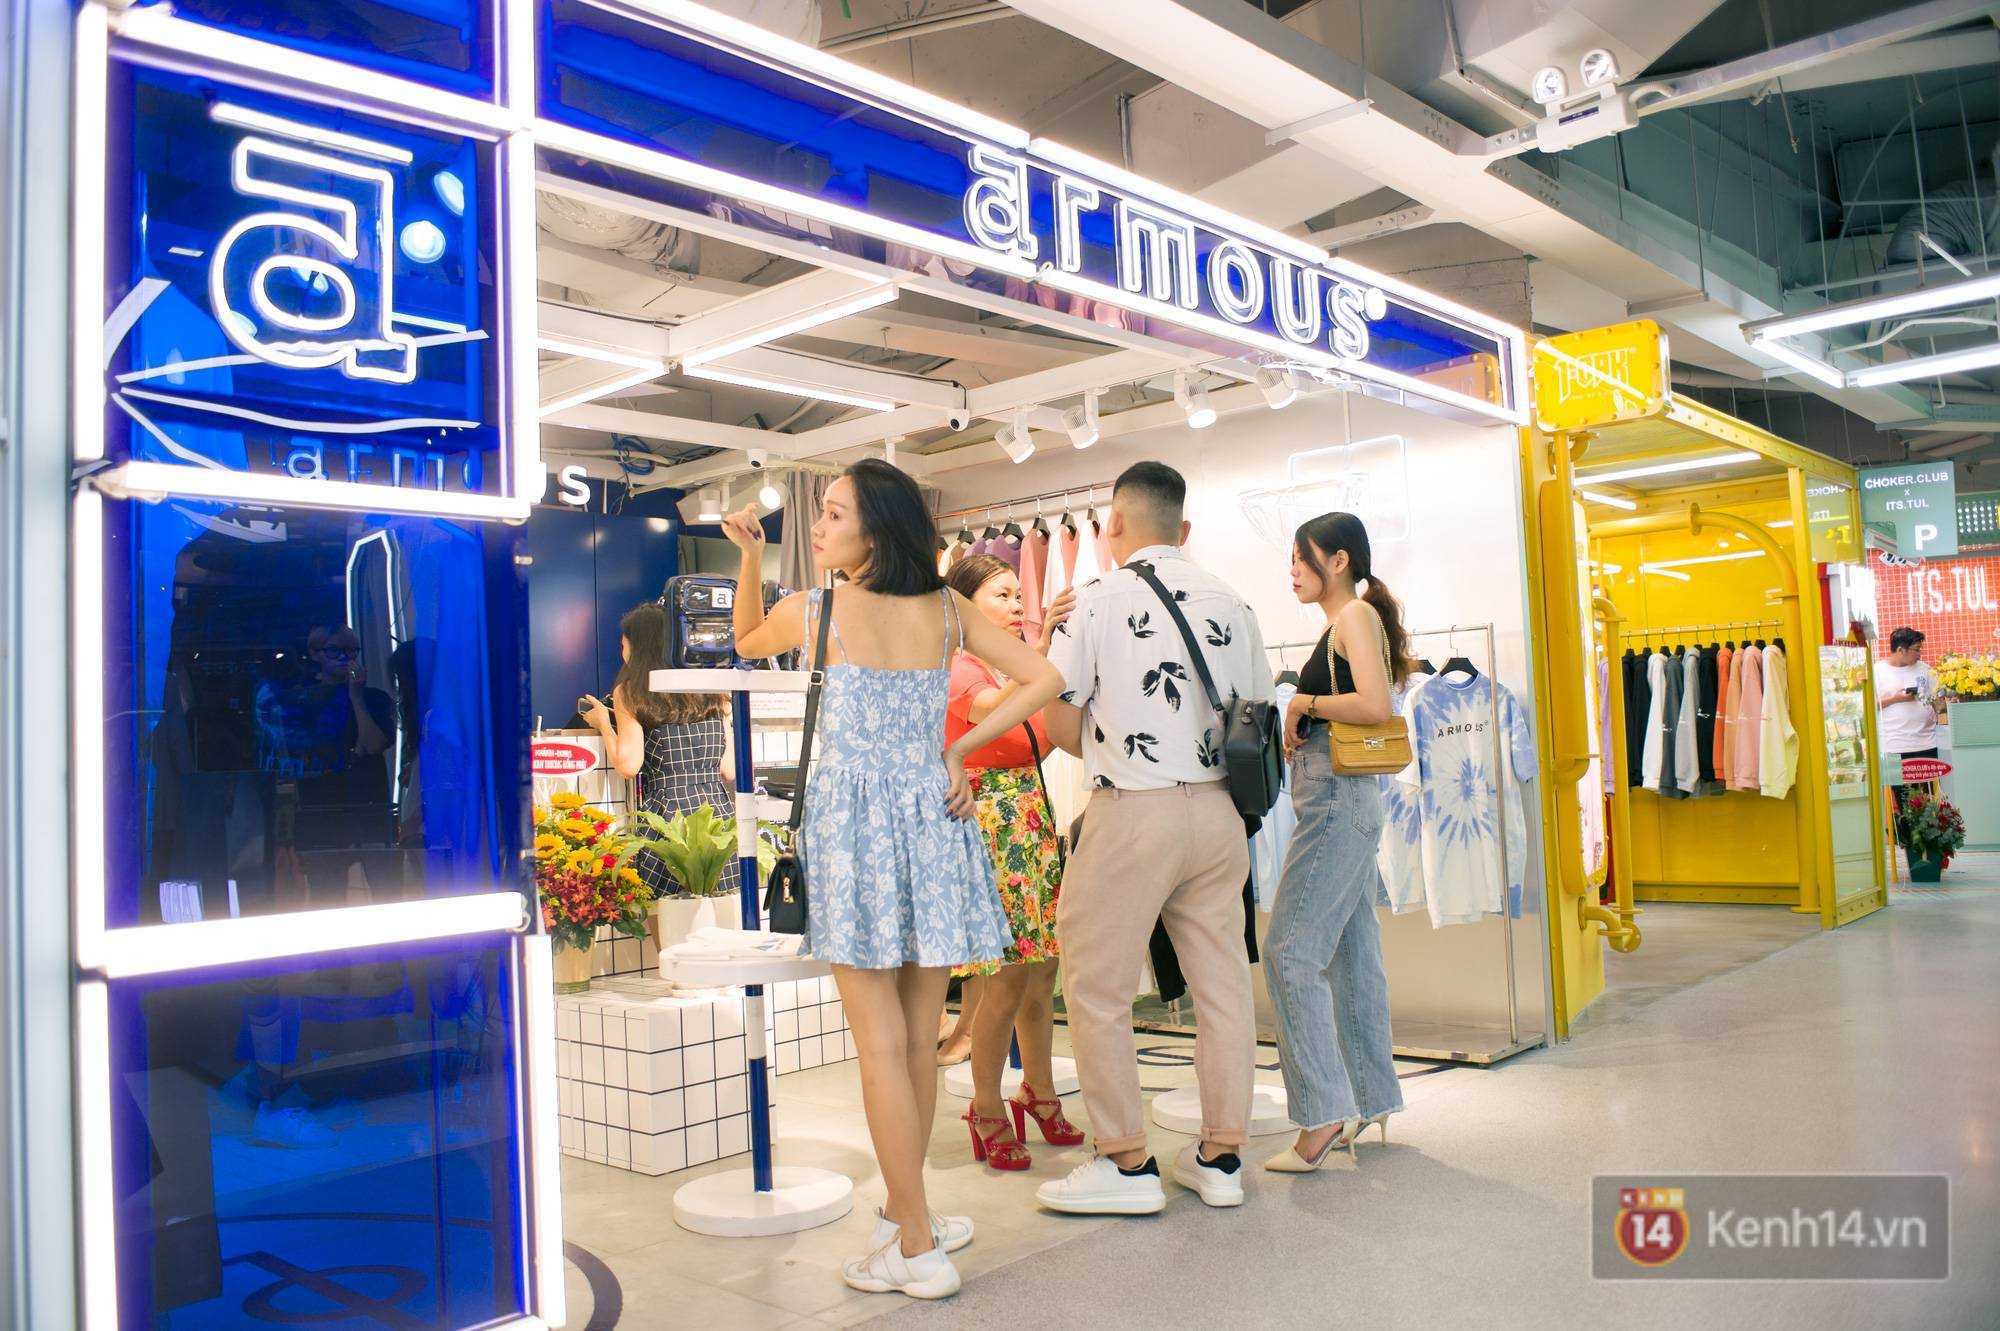 The New Playground khai trương khu mua sắm dưới lòng đất thứ 2 tại Sài Gòn, giới trẻ nhận xét: Mọi thứ đều “nhỉnh” hơn địa điểm cũ rất nhiều! - Ảnh 8.